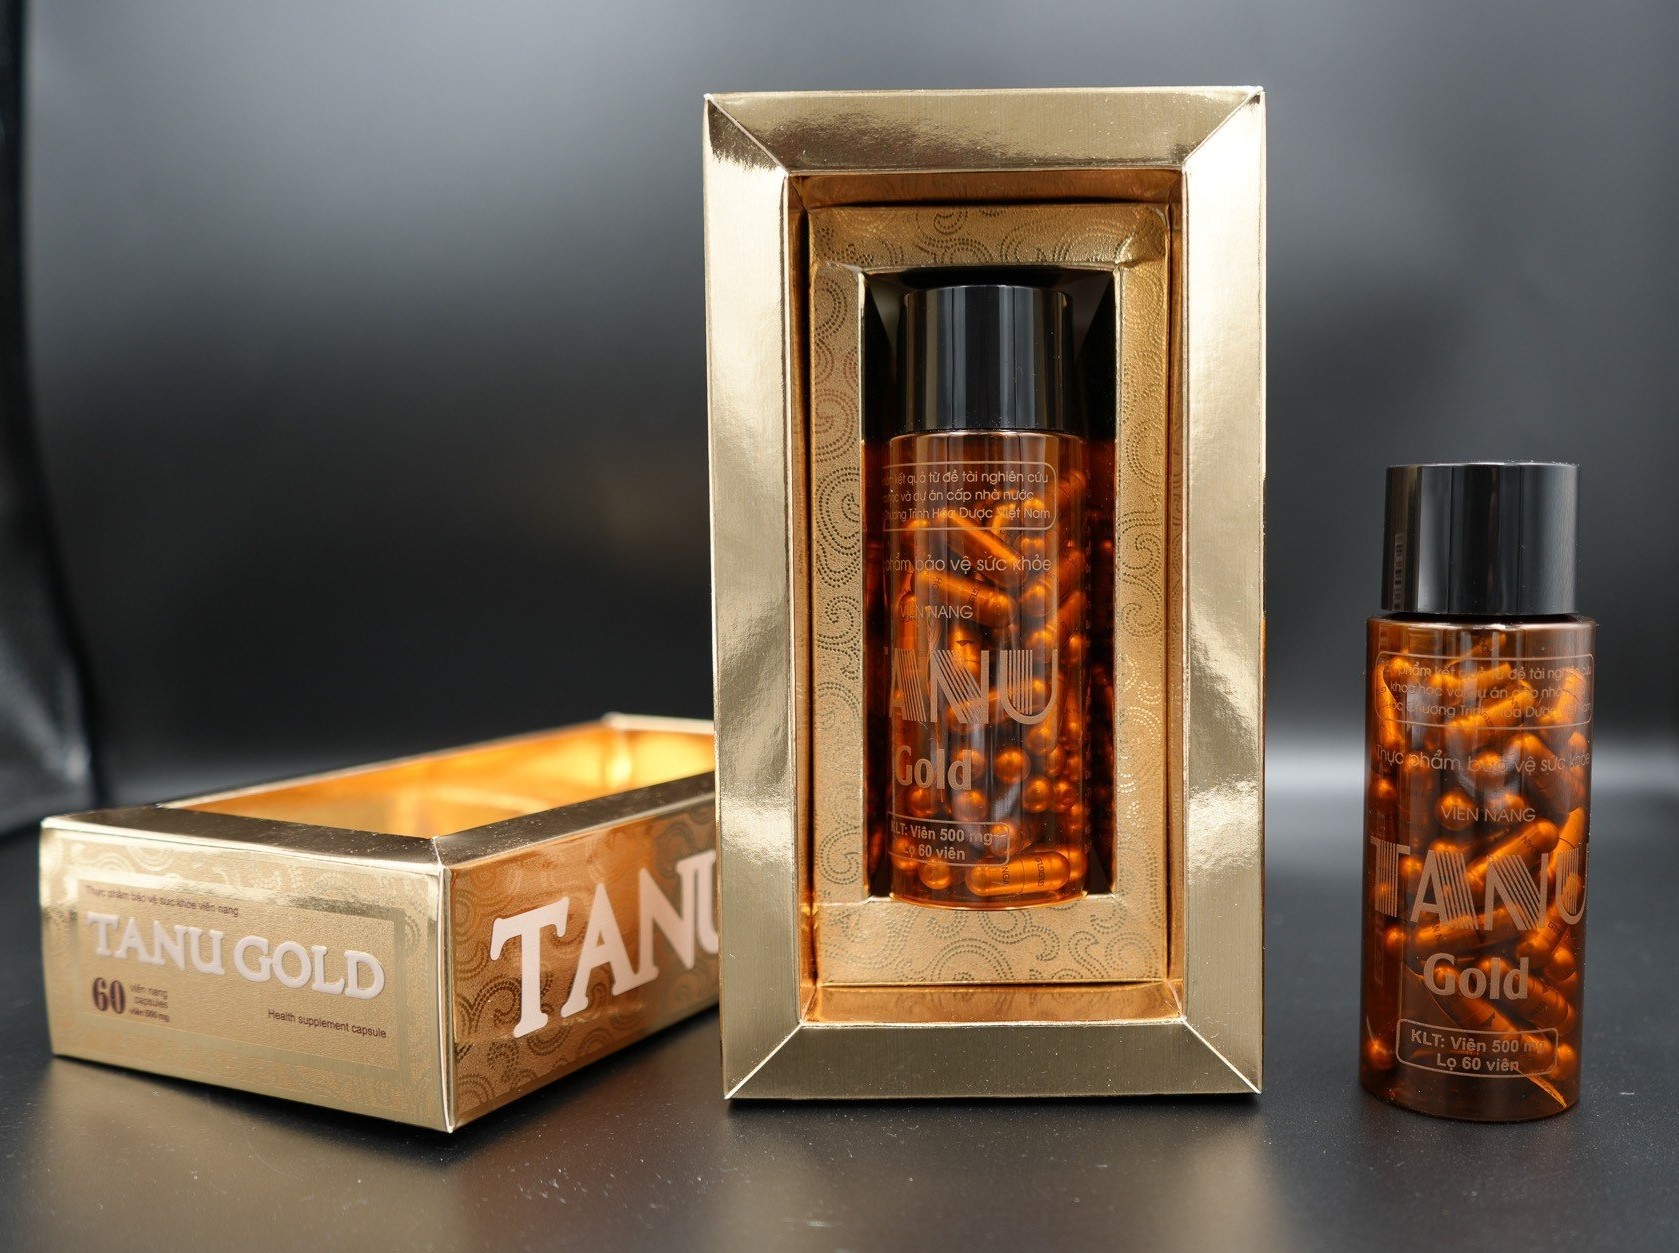  Viên nang TANU Gold Thải độc gan  tăng khả năng kháng viêm, loét dạ dày, đường ruột.